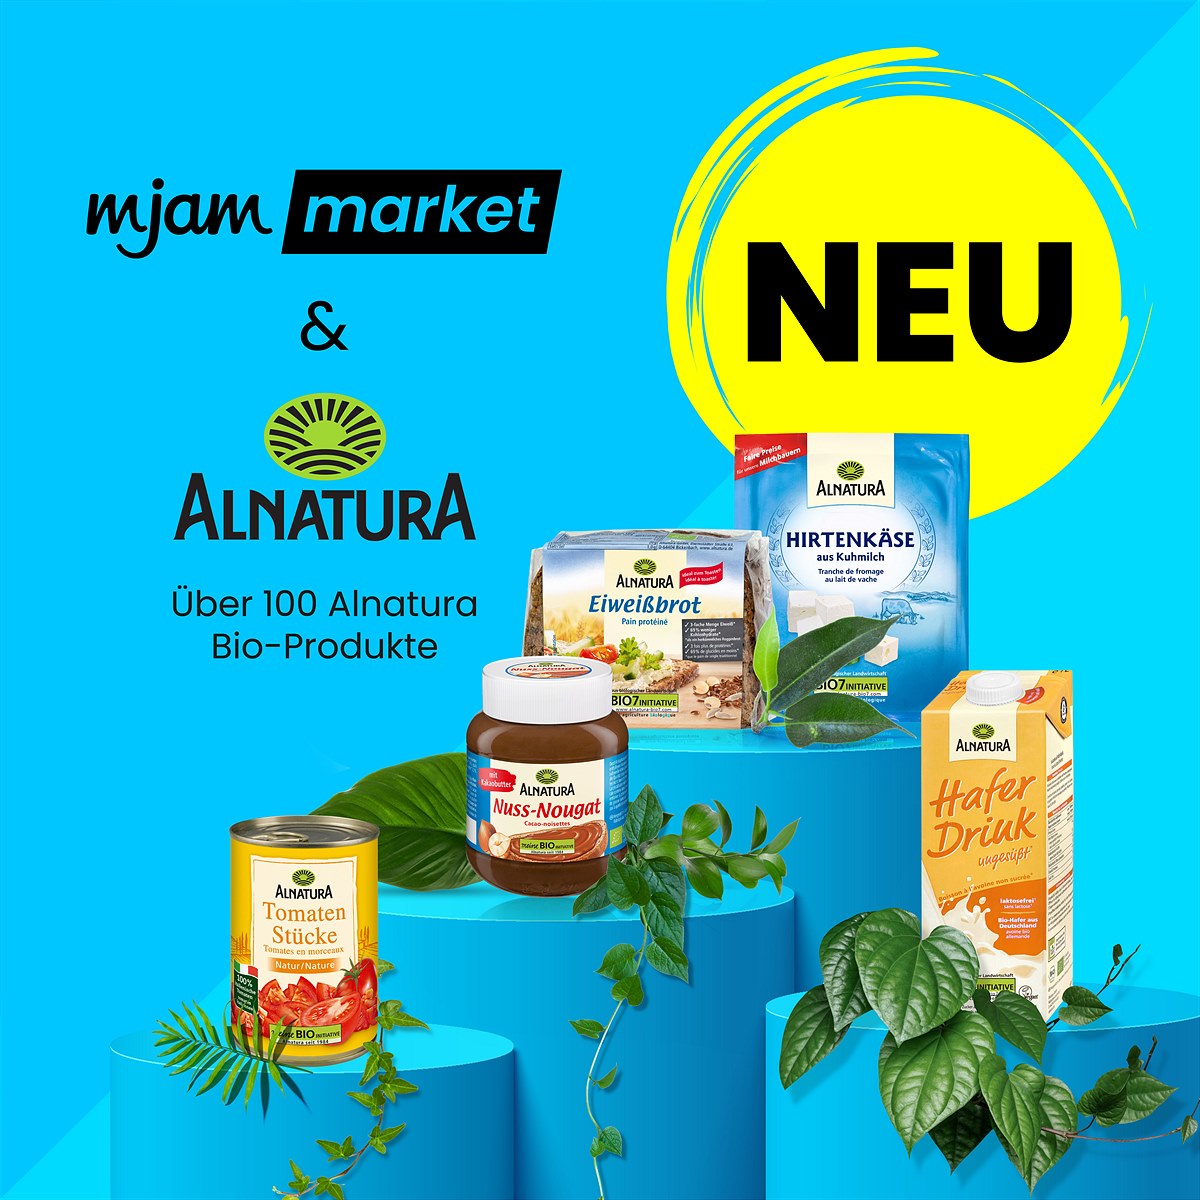 mjam market verstärkt Bio-Offensive: Über 100 Produkte von Alnatura kaufen und blitzschnell liefern lassen! 